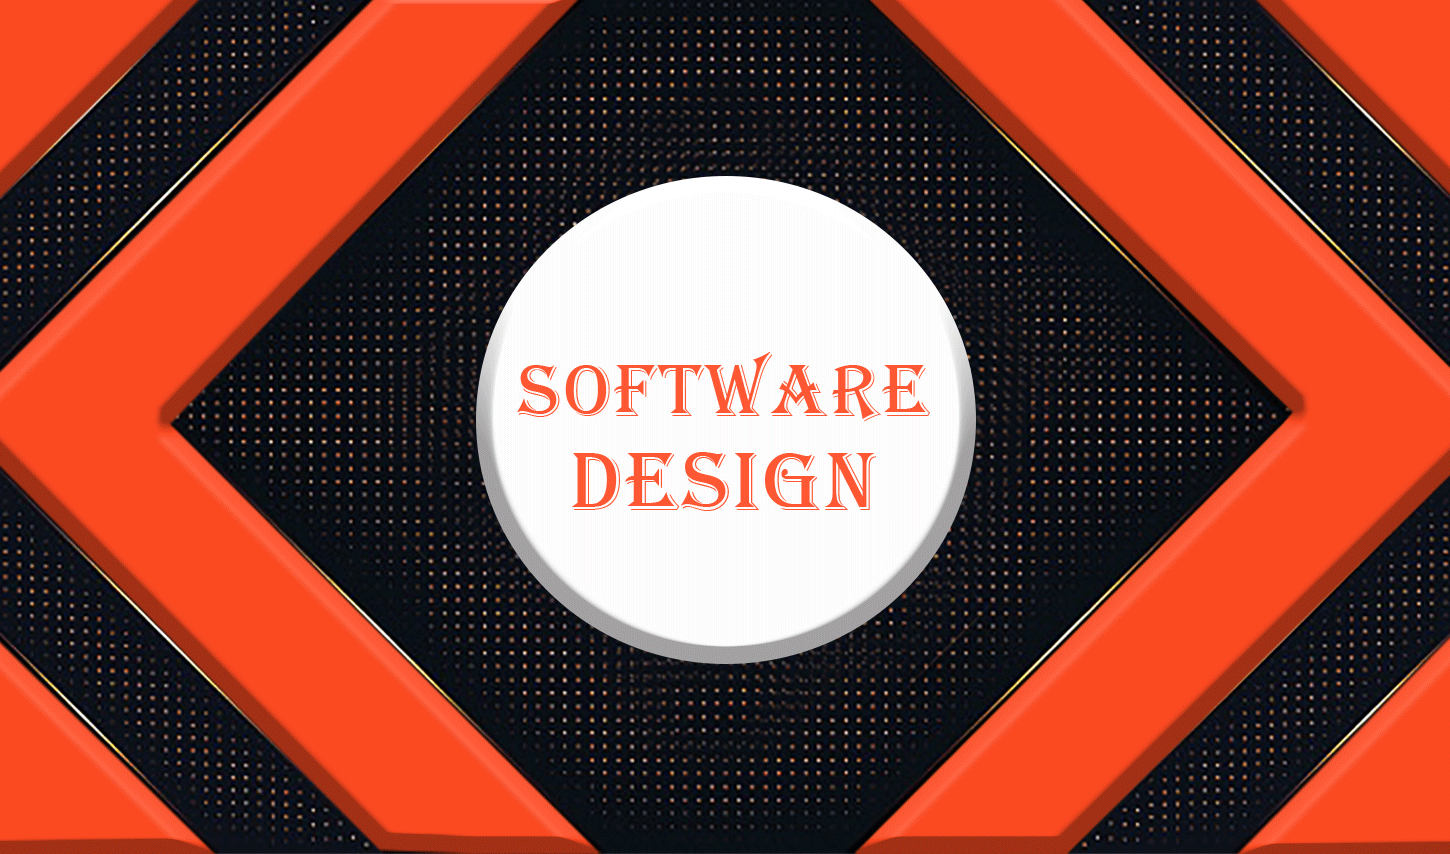 آموزش طراحی و معماری نرم افزار، در این دوره دانشجو با مباحث Clean Coding، Refactoring، اصول SOLID، الگوهای طراحی (Design Pattern)، تست نرم افزار Unit Testing آشنا می شود.